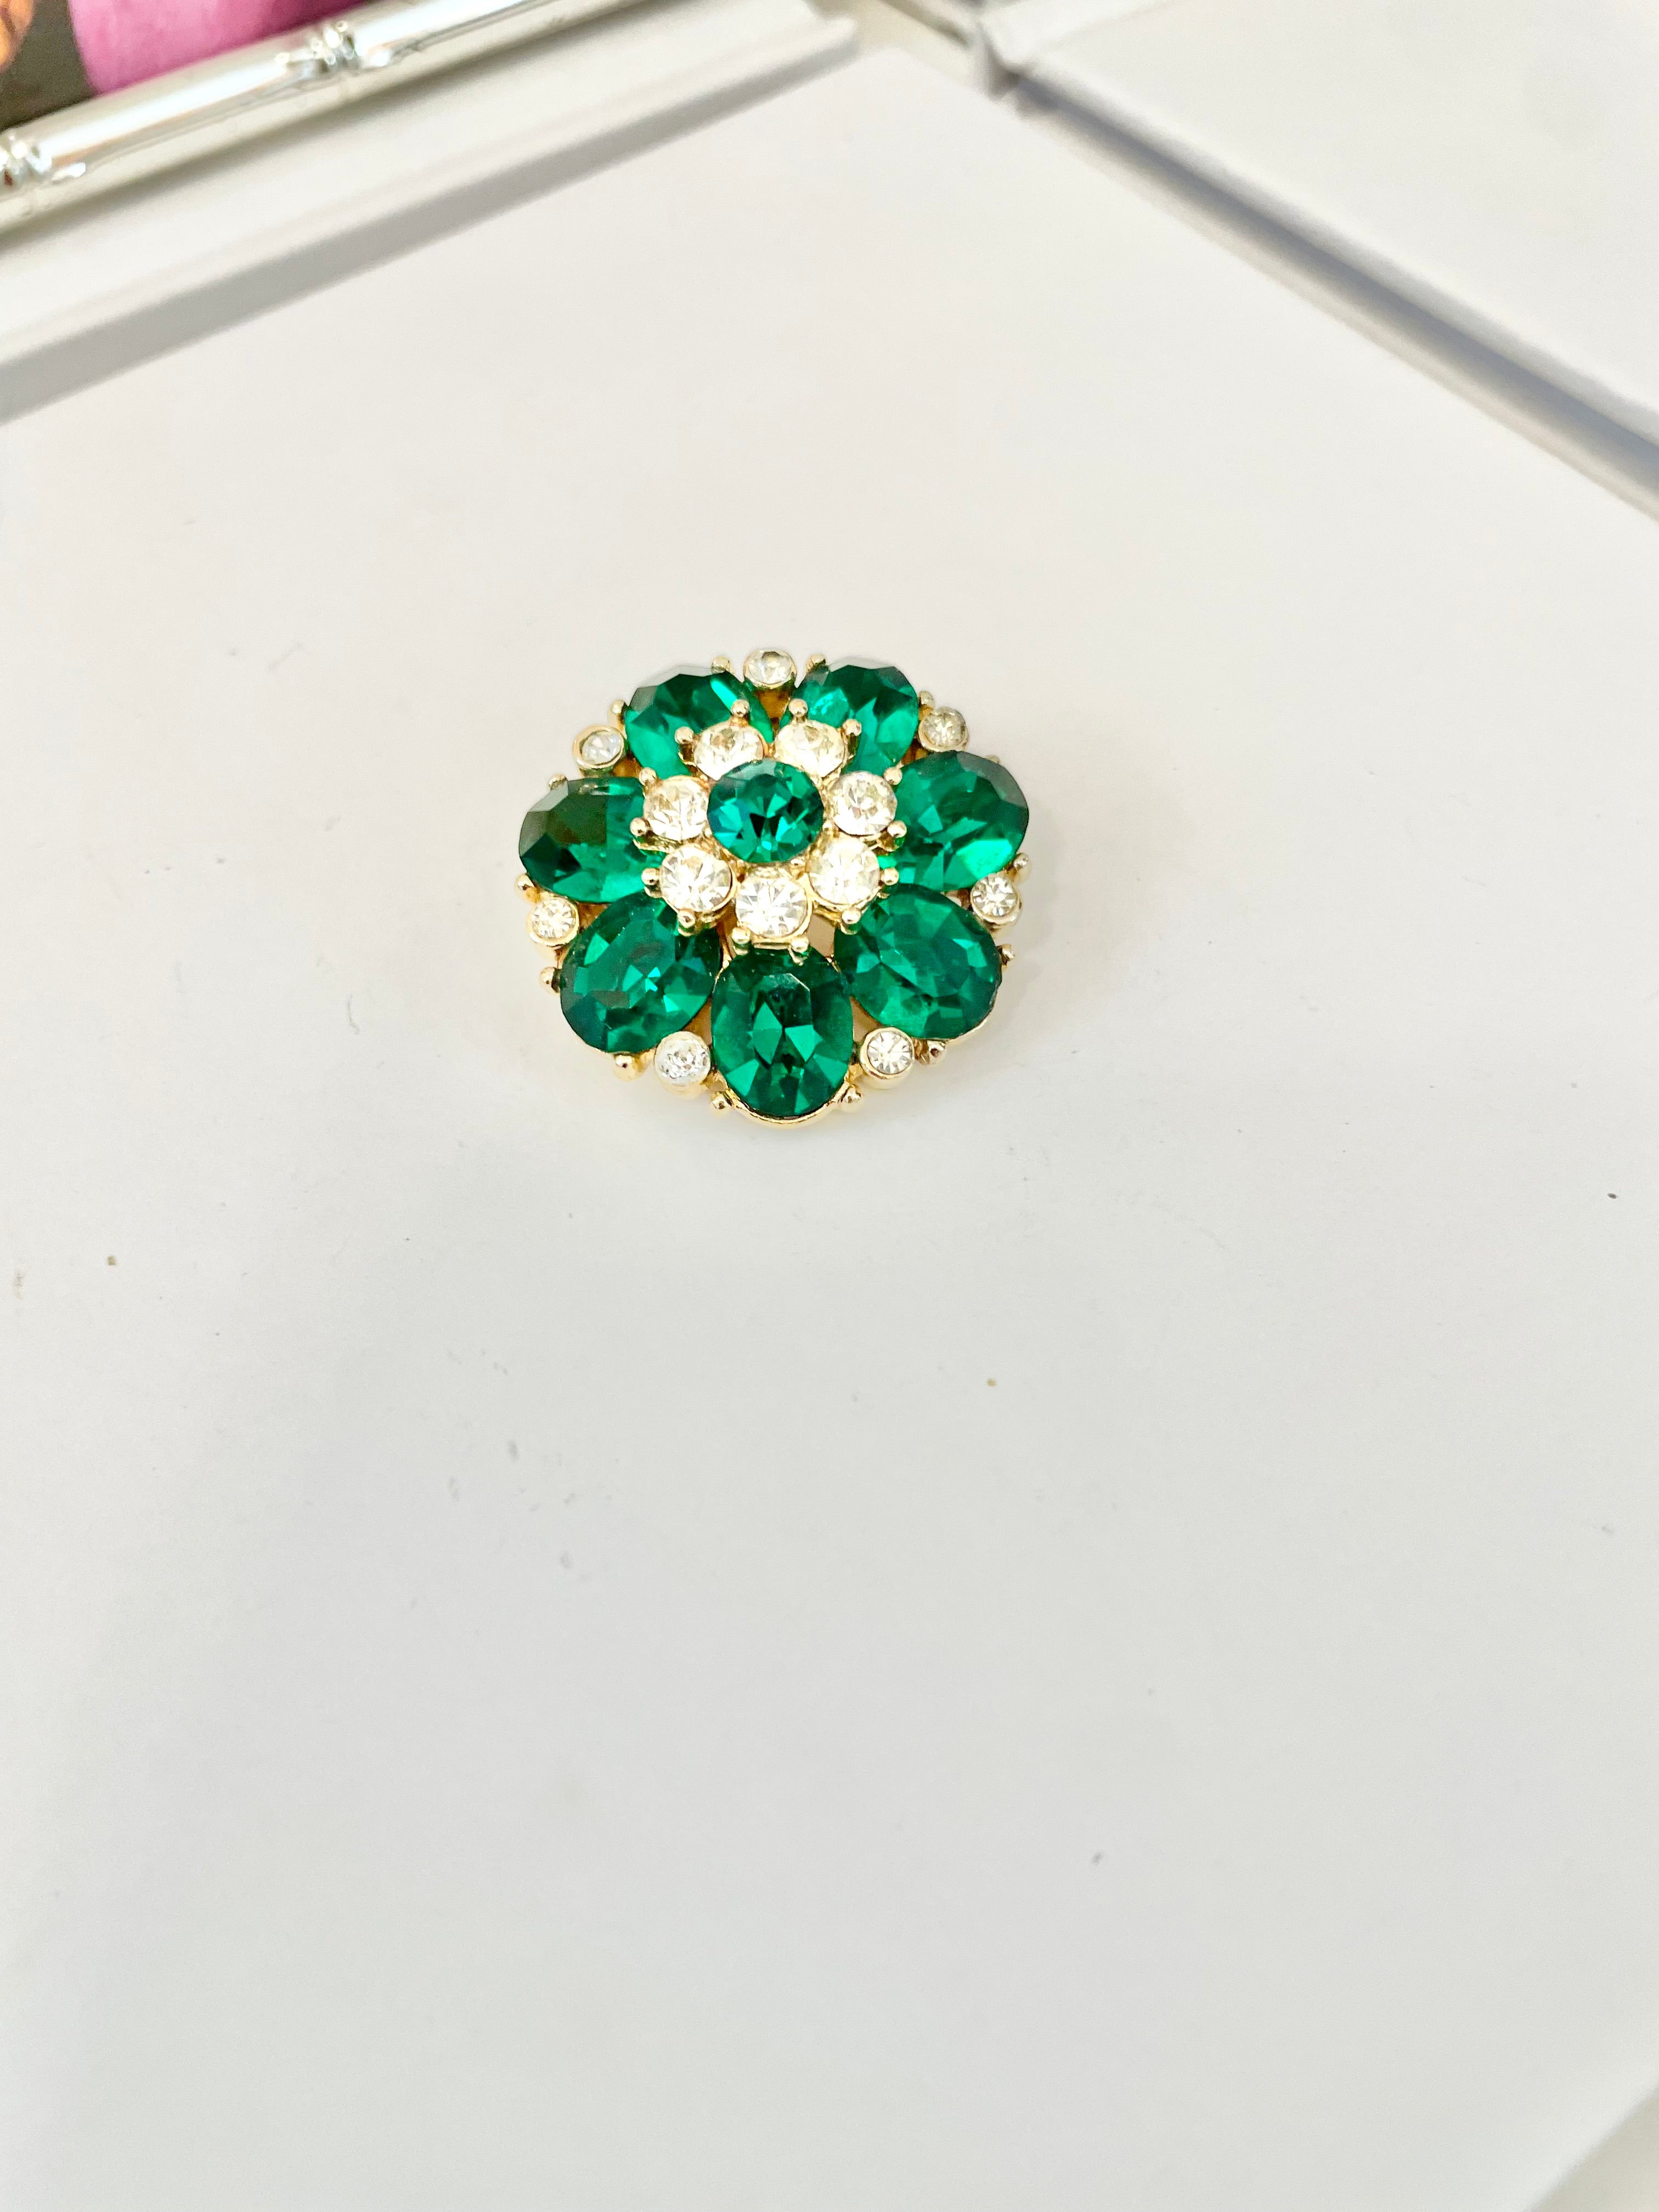 The prettiest petite emerald glass brooch.... so sweet